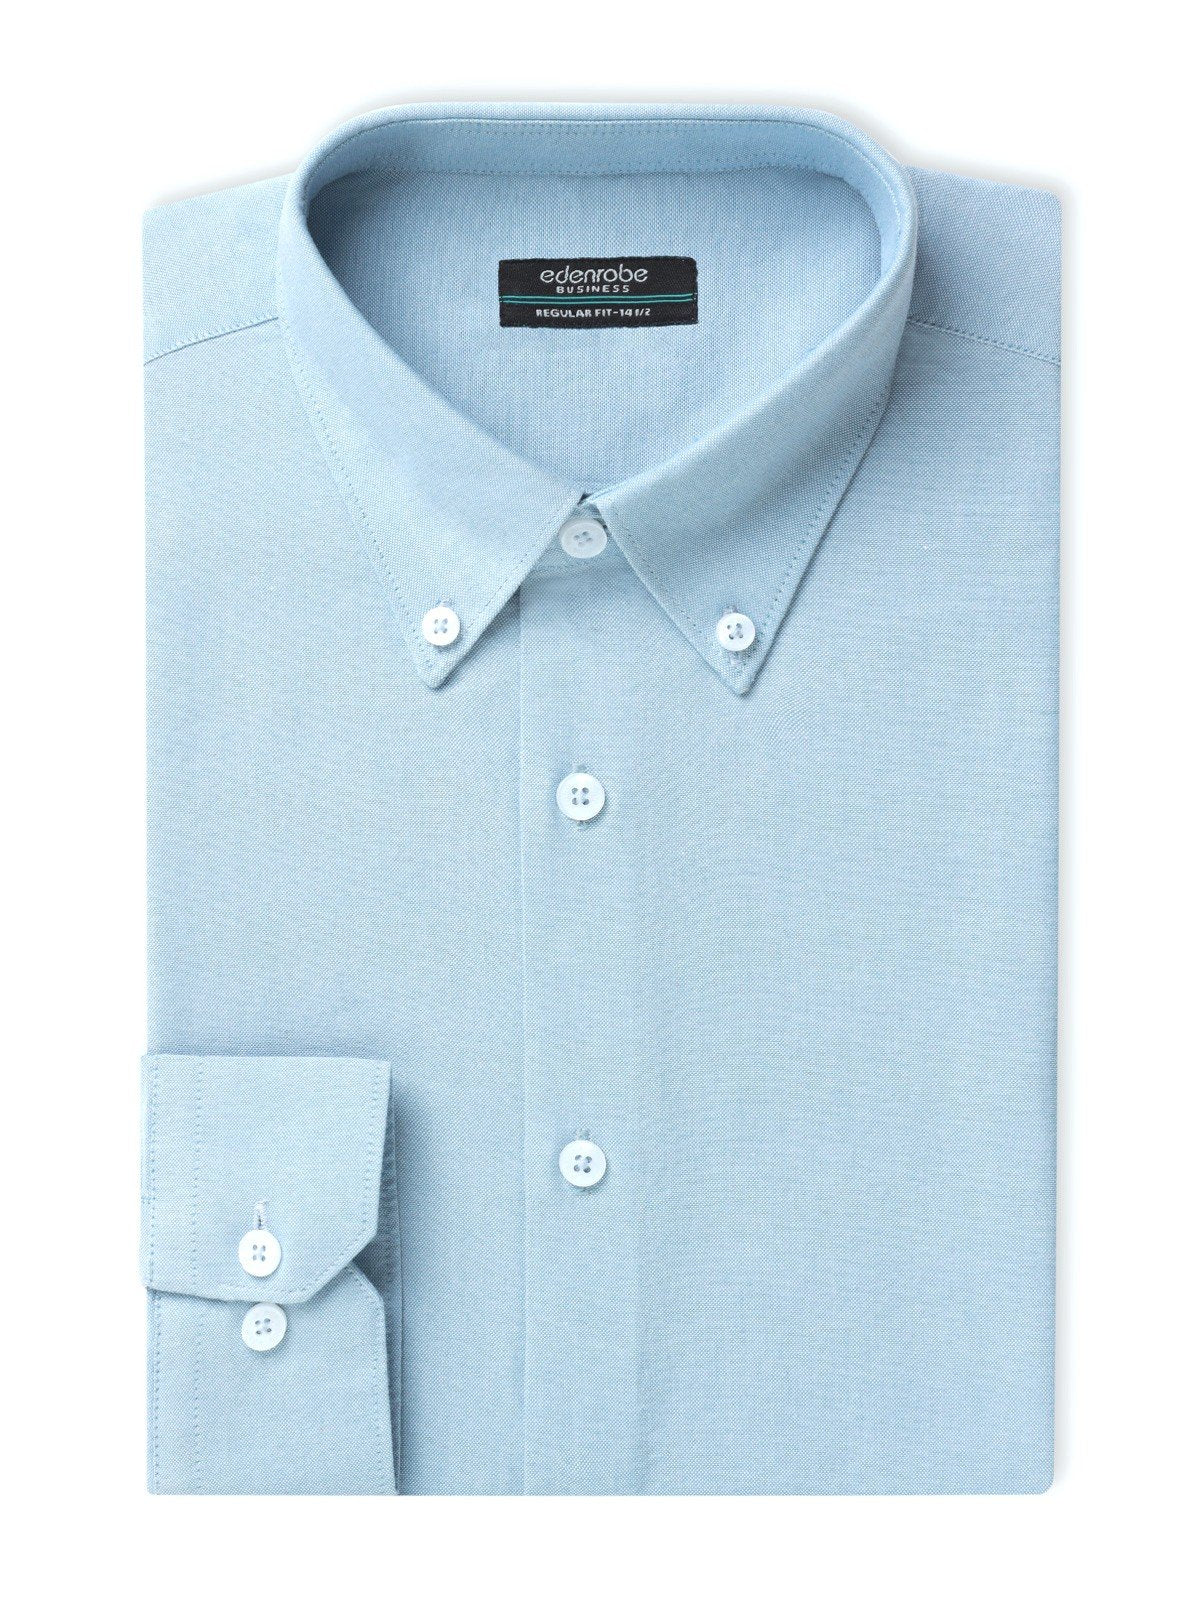 edenrobe Men's Ice Blue Shirt Plain - EMTSB22-134 – edenrobe Pakistan